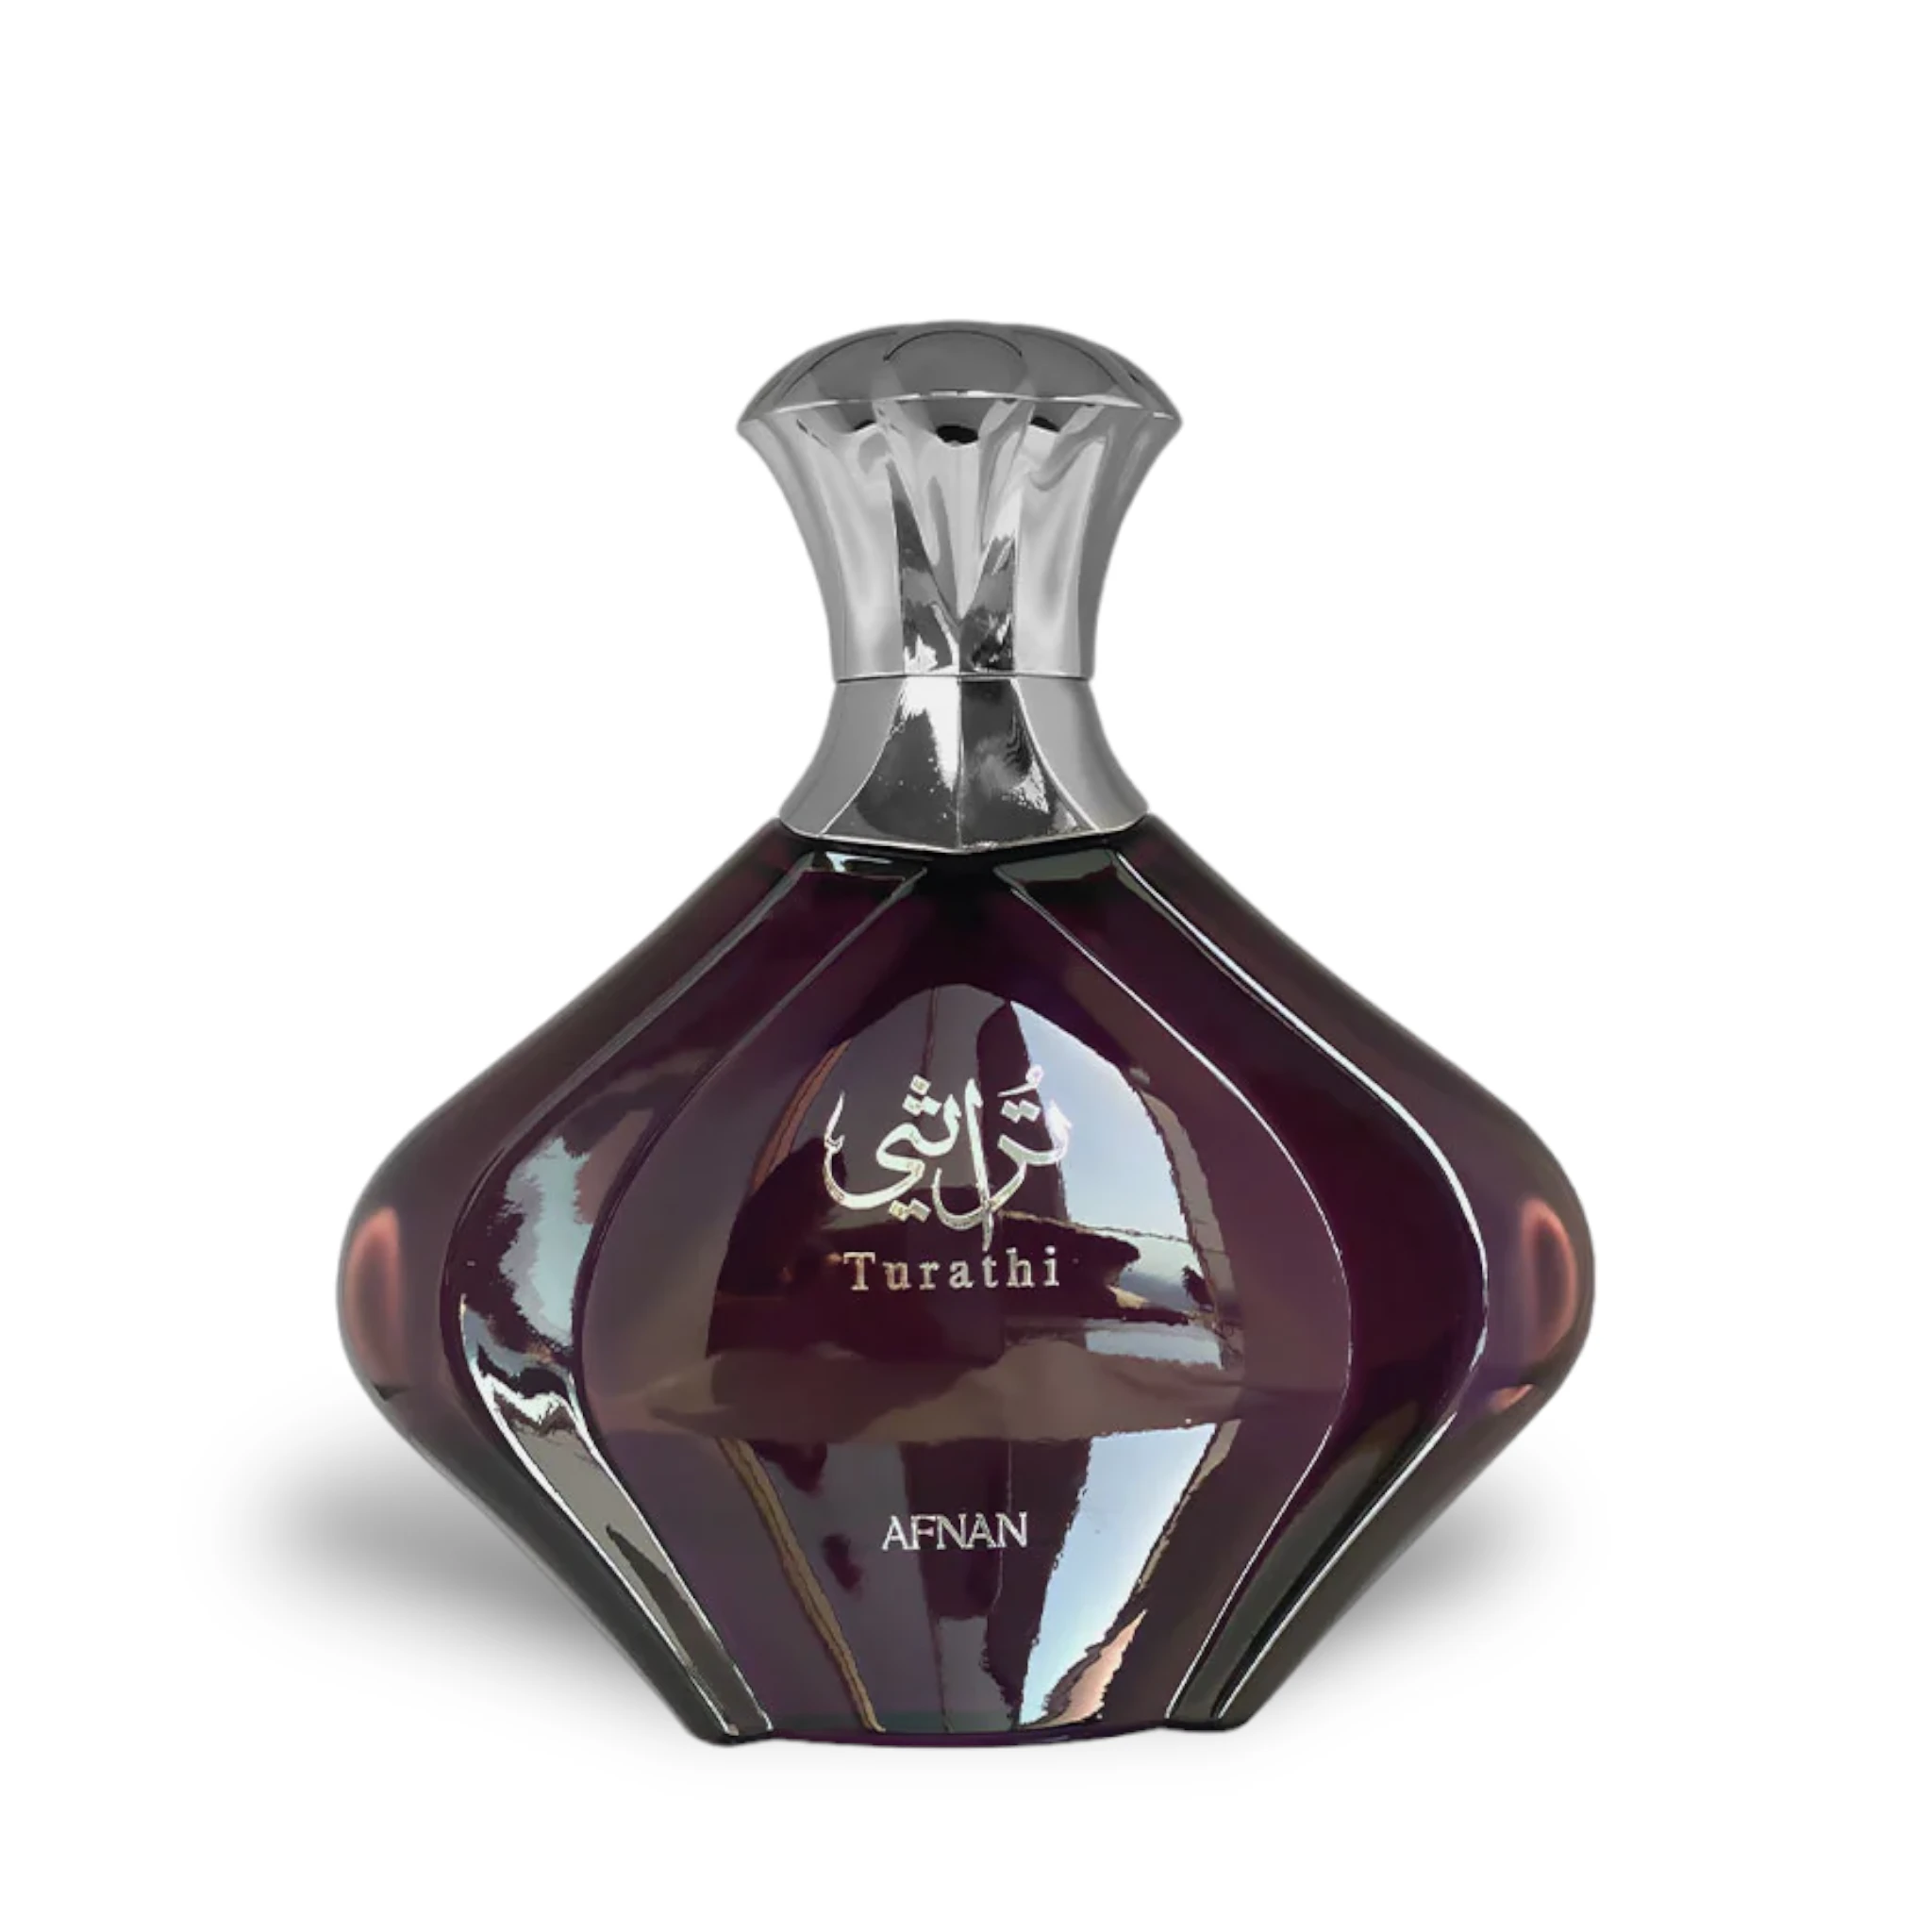 Turathi Purple Perfume Eau De Parfum 90Ml By Afnan